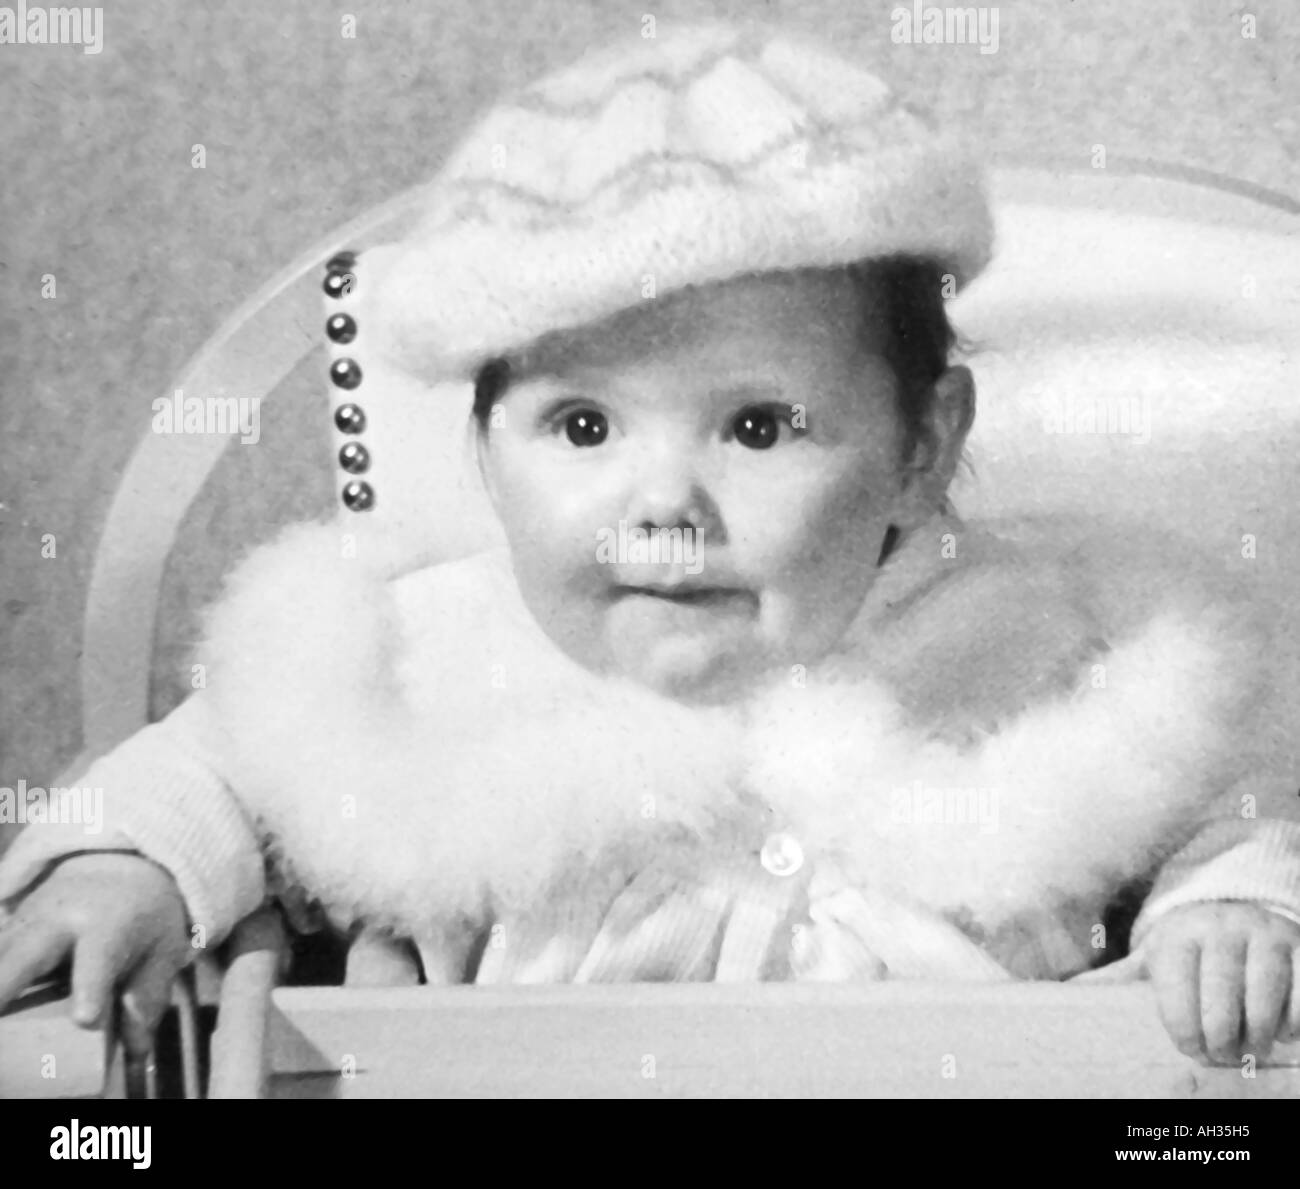 OLD VINTAGE SNAPSHOT FAMILLE PHOTOGRAPHIE DE BABY GIRL WEARING FUR COAT PARÉS ET BONNET DE LAINE assis dans une chaise haute Banque D'Images